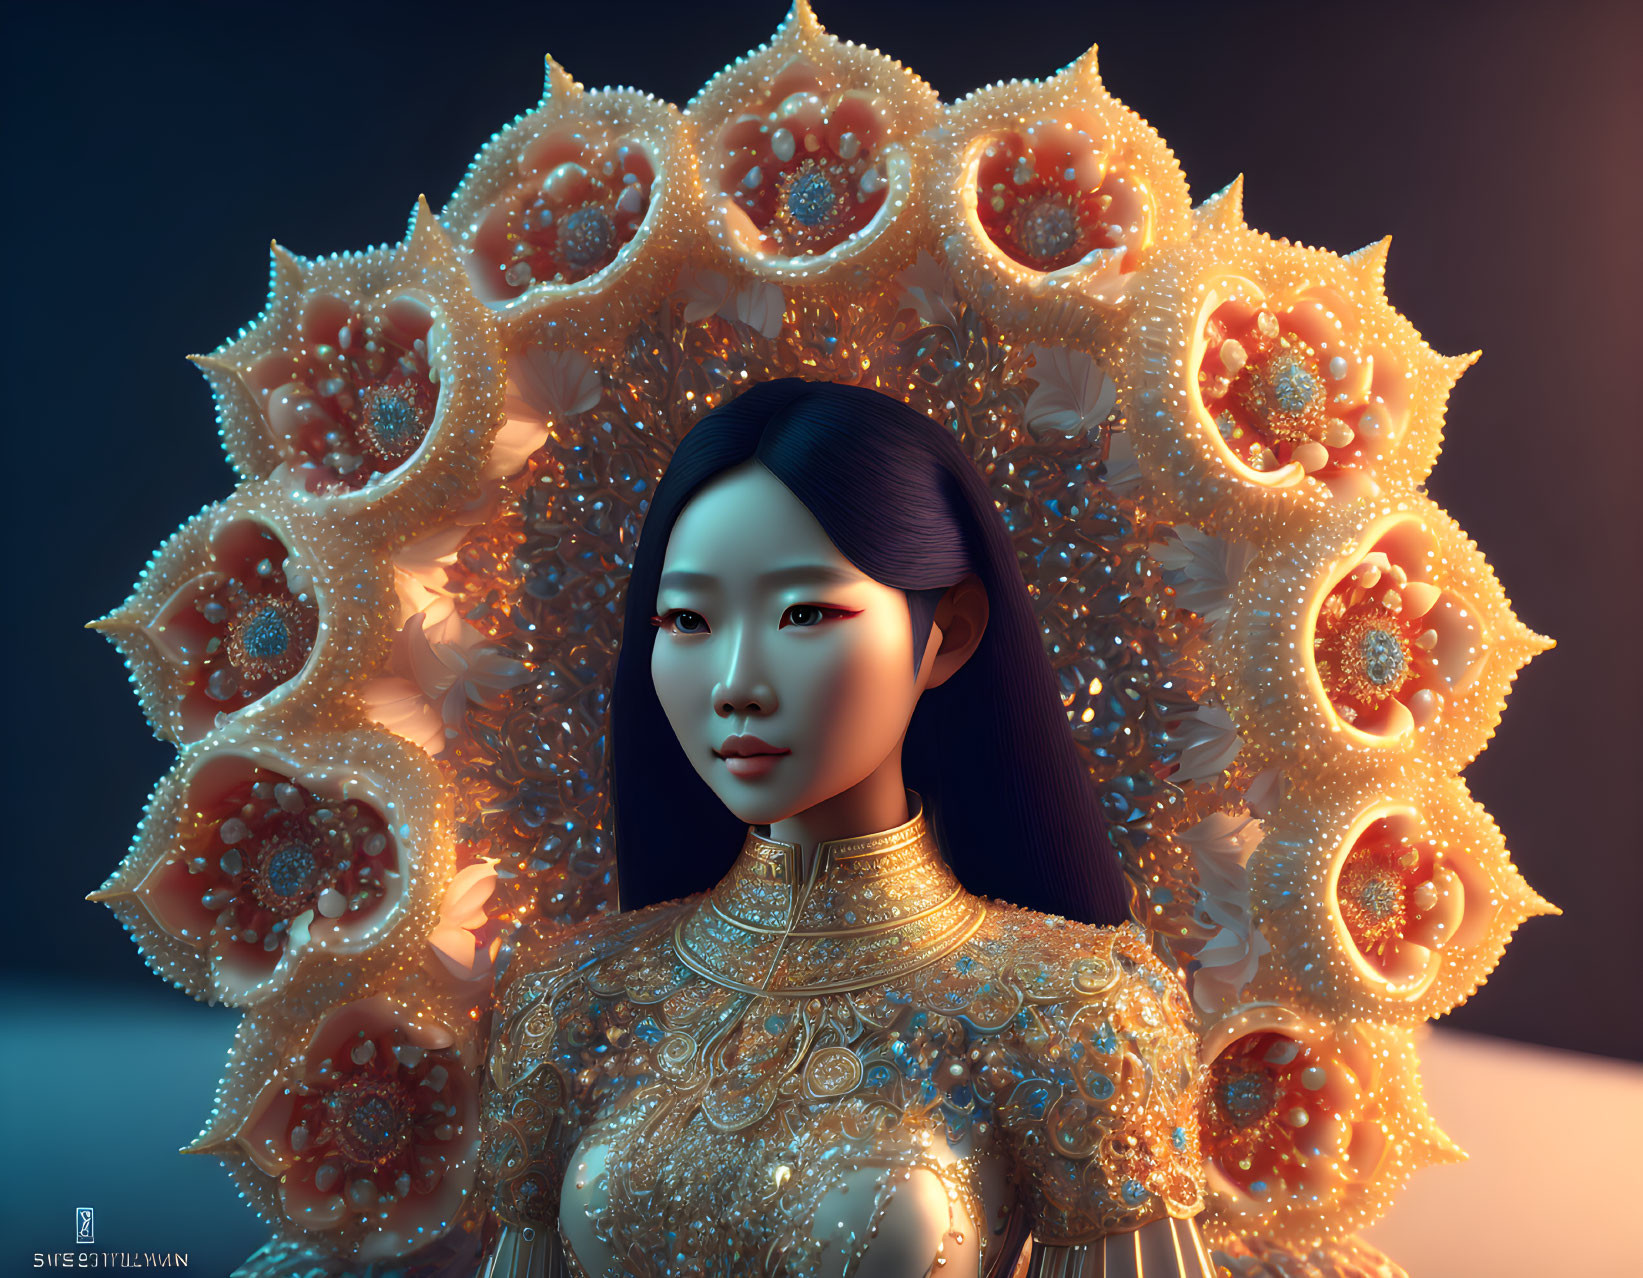 Digital Art: Asian Woman in Golden Floral Headdress & High-Collared Dress